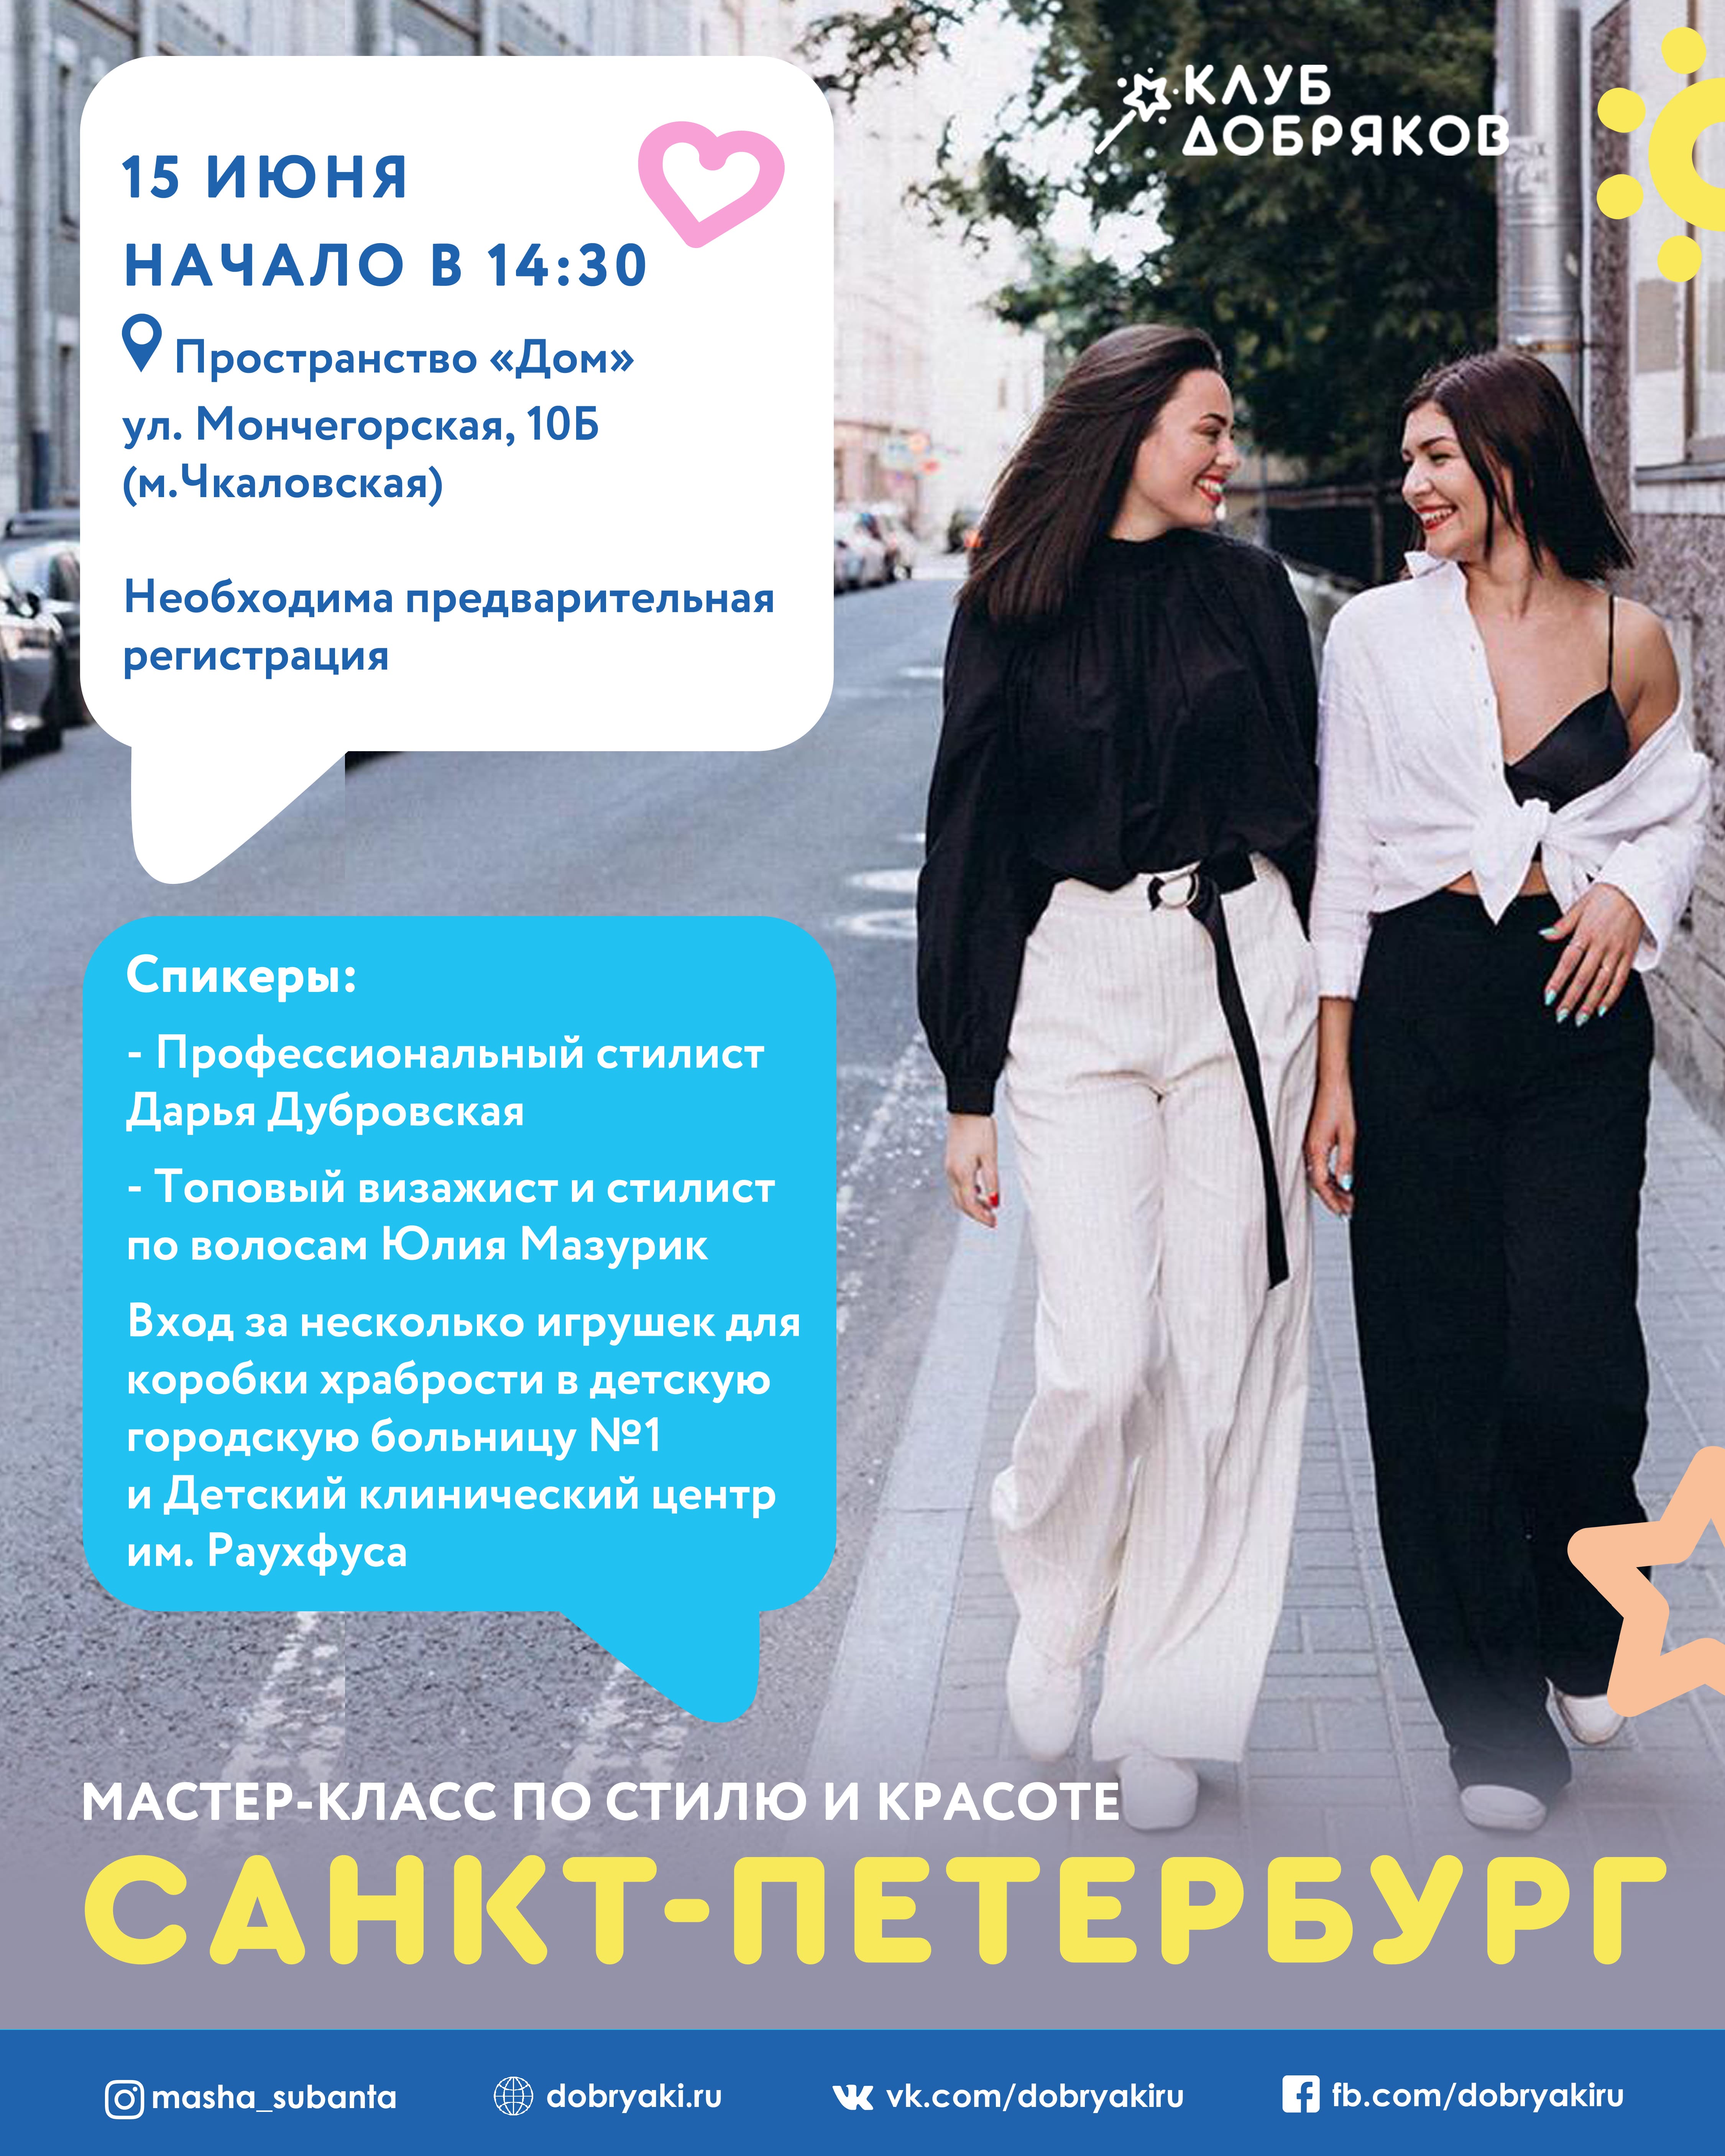 В Петербурге пройдет благотворительный мастер-класс